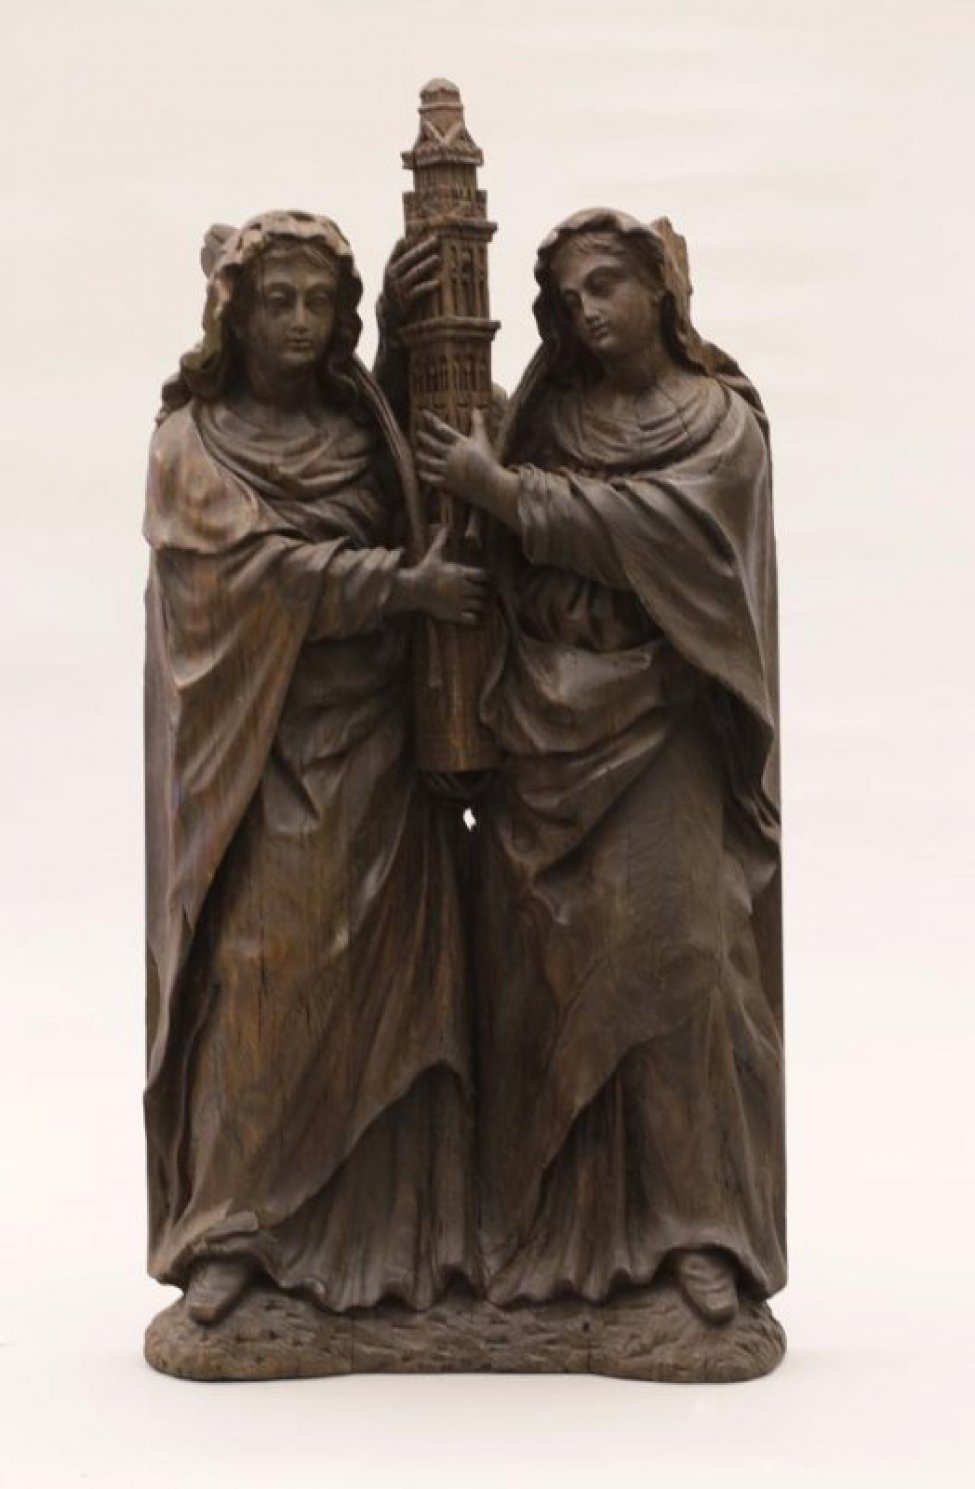 Изображены две женские фигуры, в длинных одеждах. Обе женщины в руках держат макет, изображающий храм, лица их обращены к зрителю.